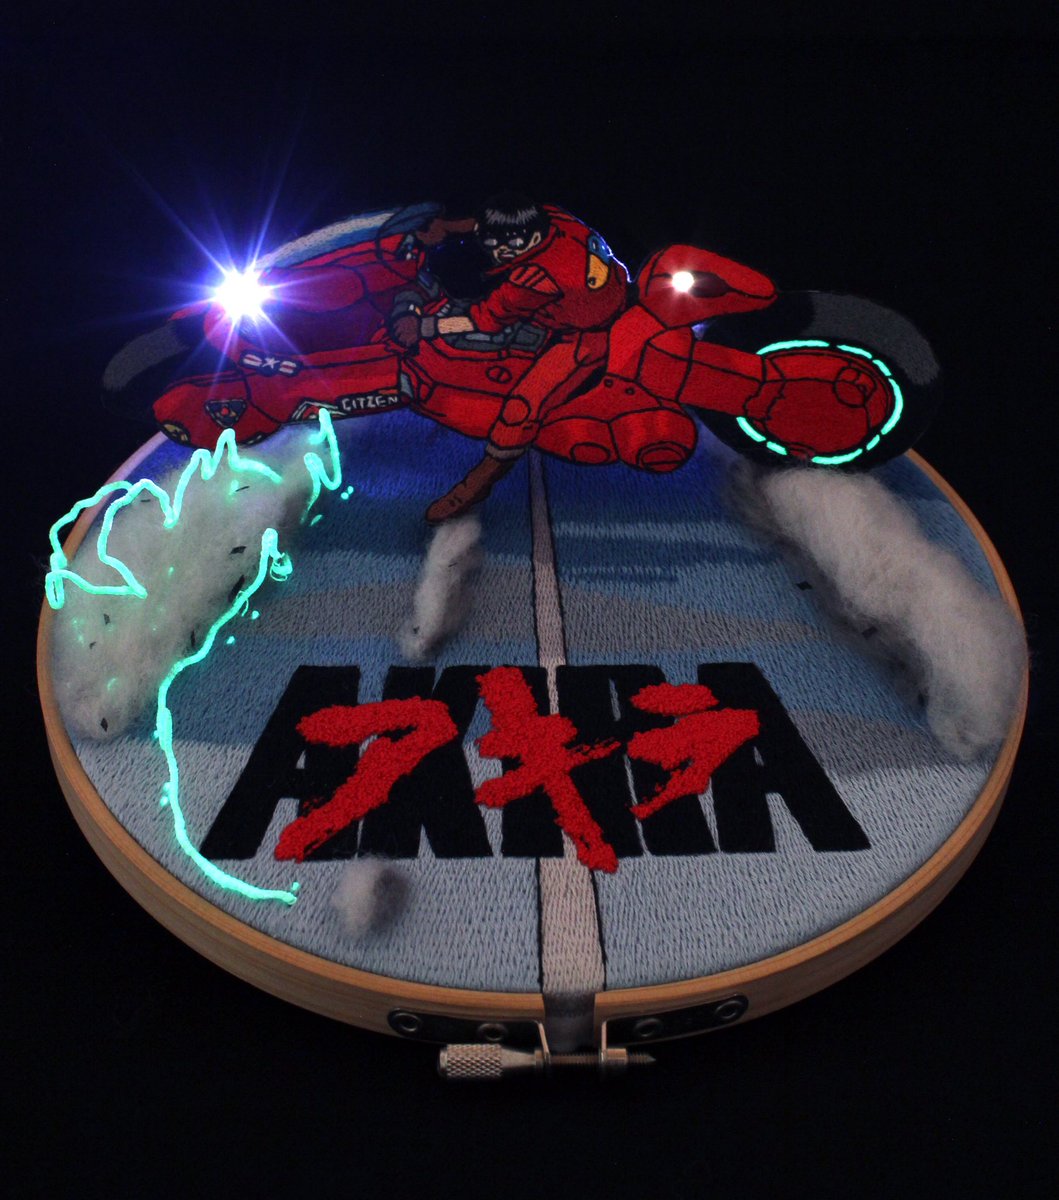 「アキラ 金田の刺繍完成!

蓄光糸とミニ電球を使用したので
暗闇で光ります?カッ」|ウショウ@モノグサ刺繍のイラスト